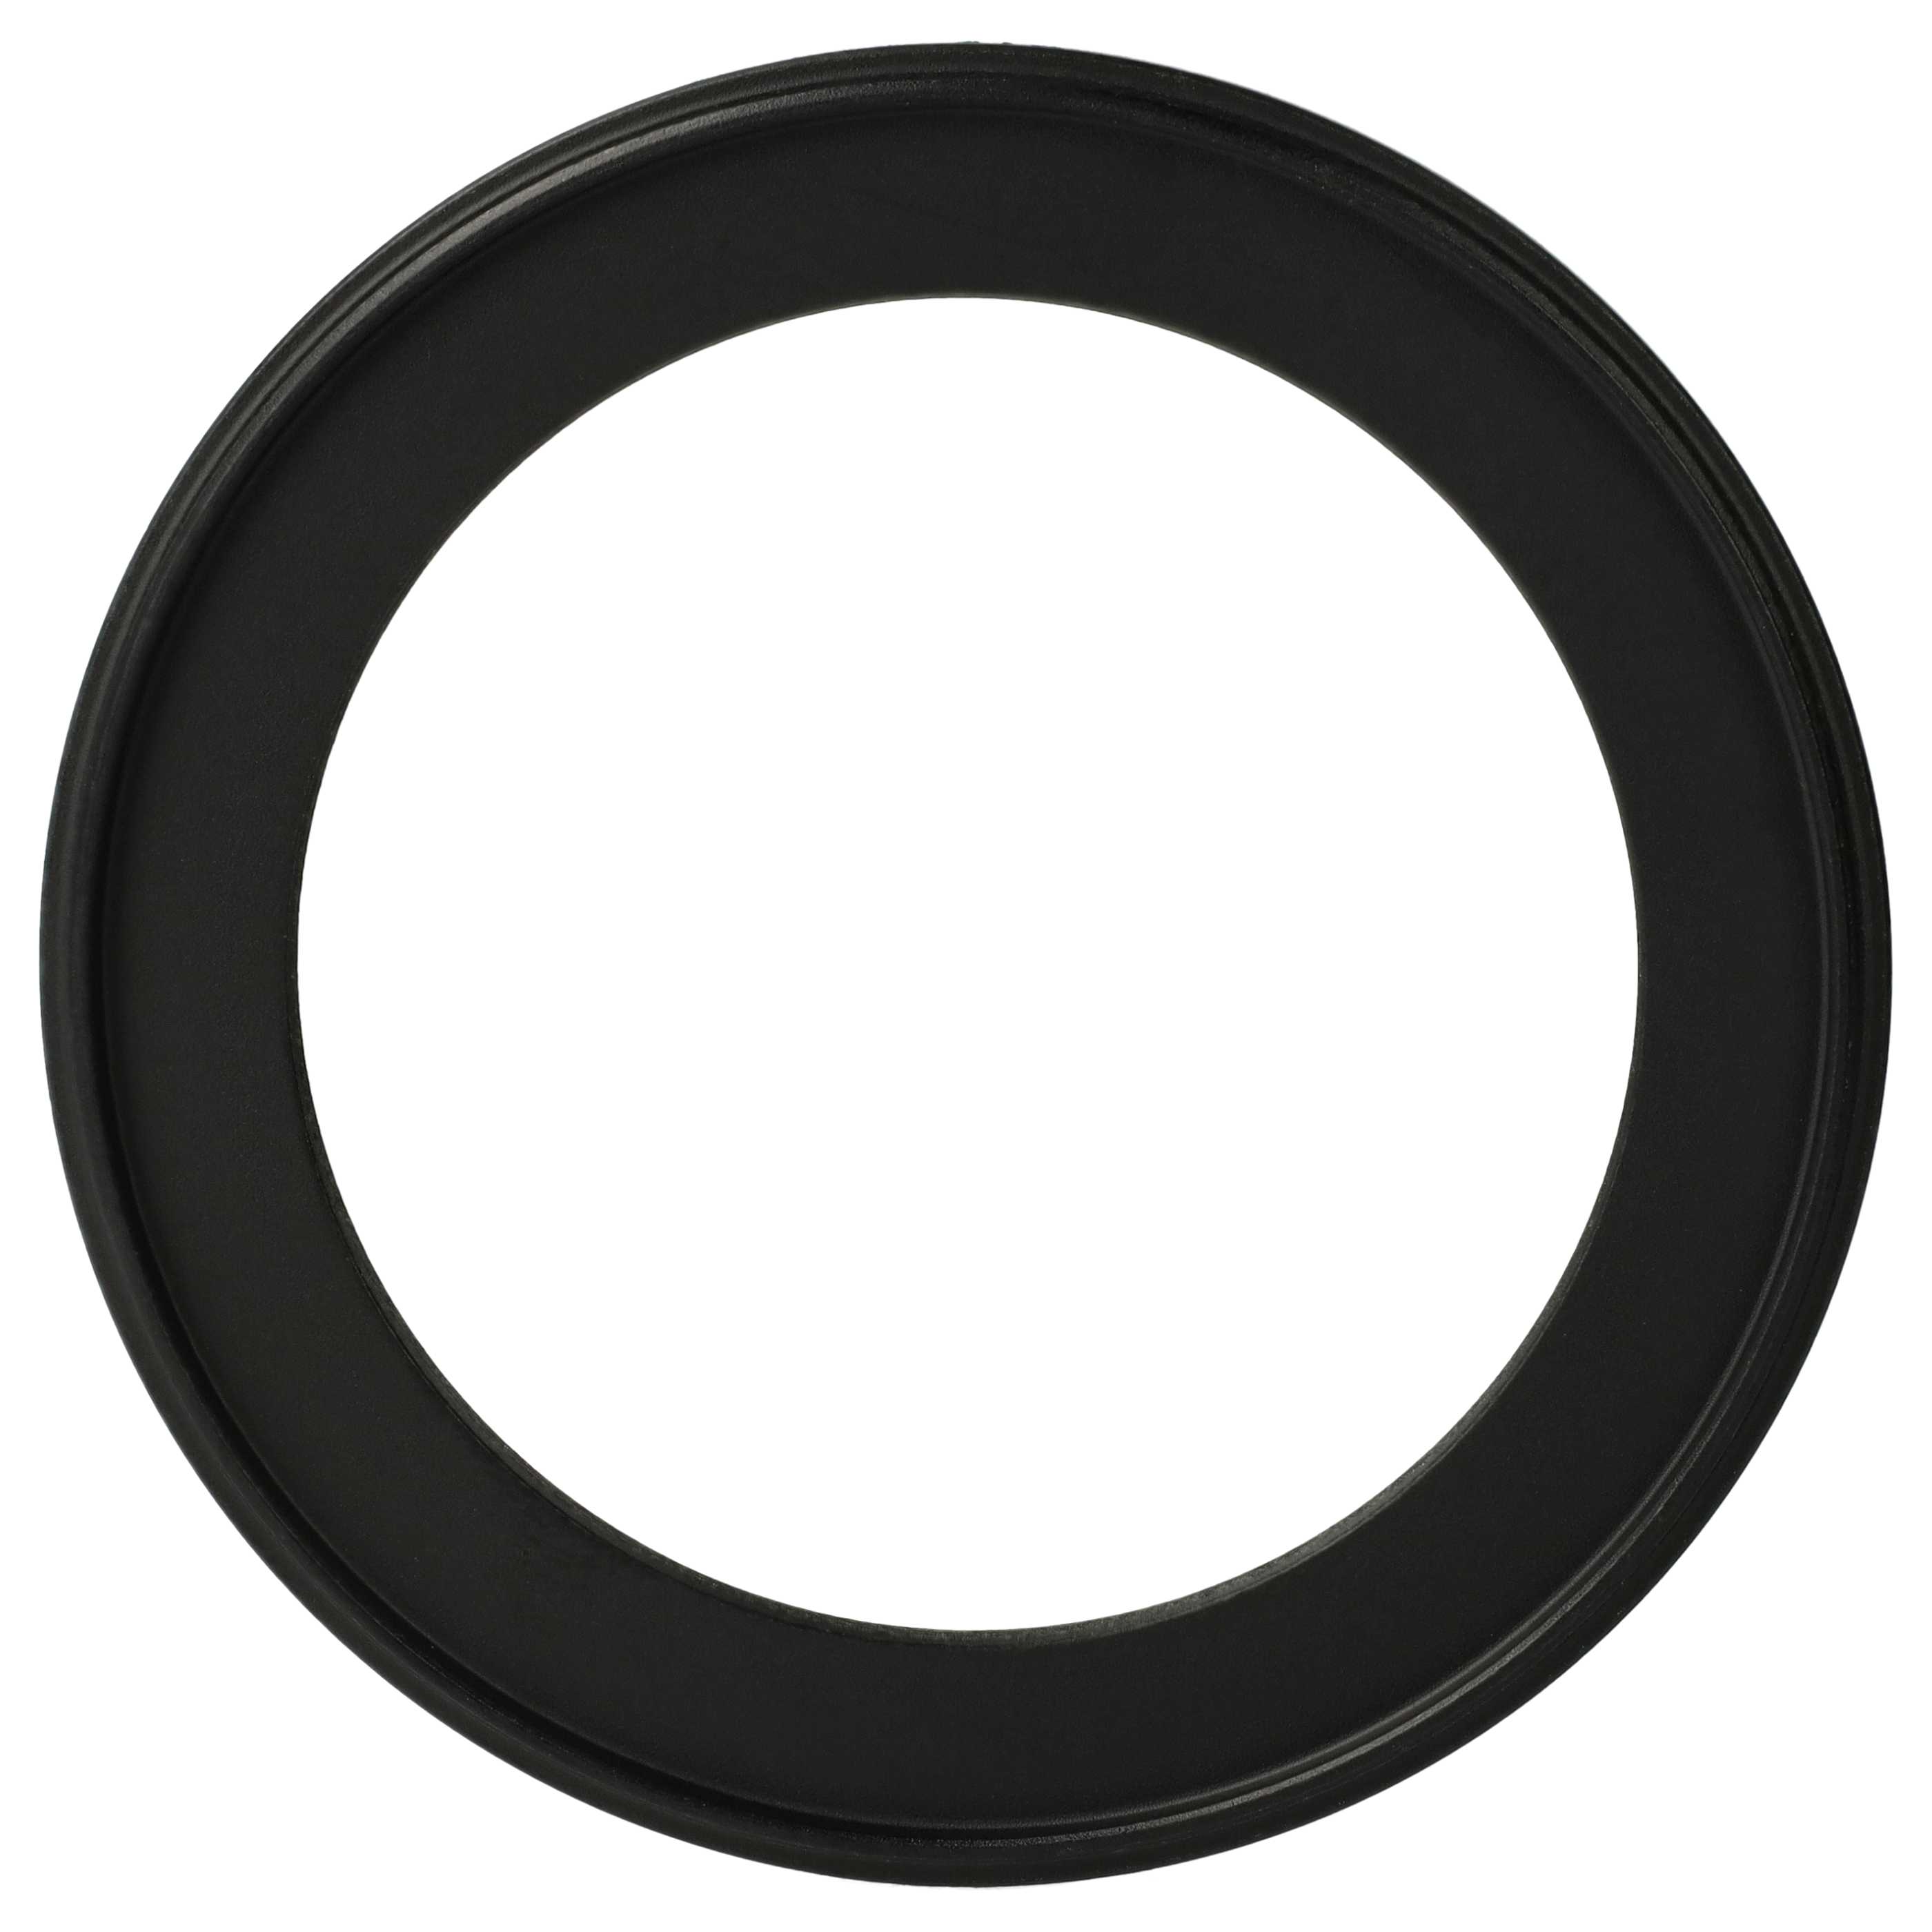 Step-Down-Ring Adapter von 82 mm auf 62 mm passend für Kamera Objektiv - Filteradapter, Metall, schwarz